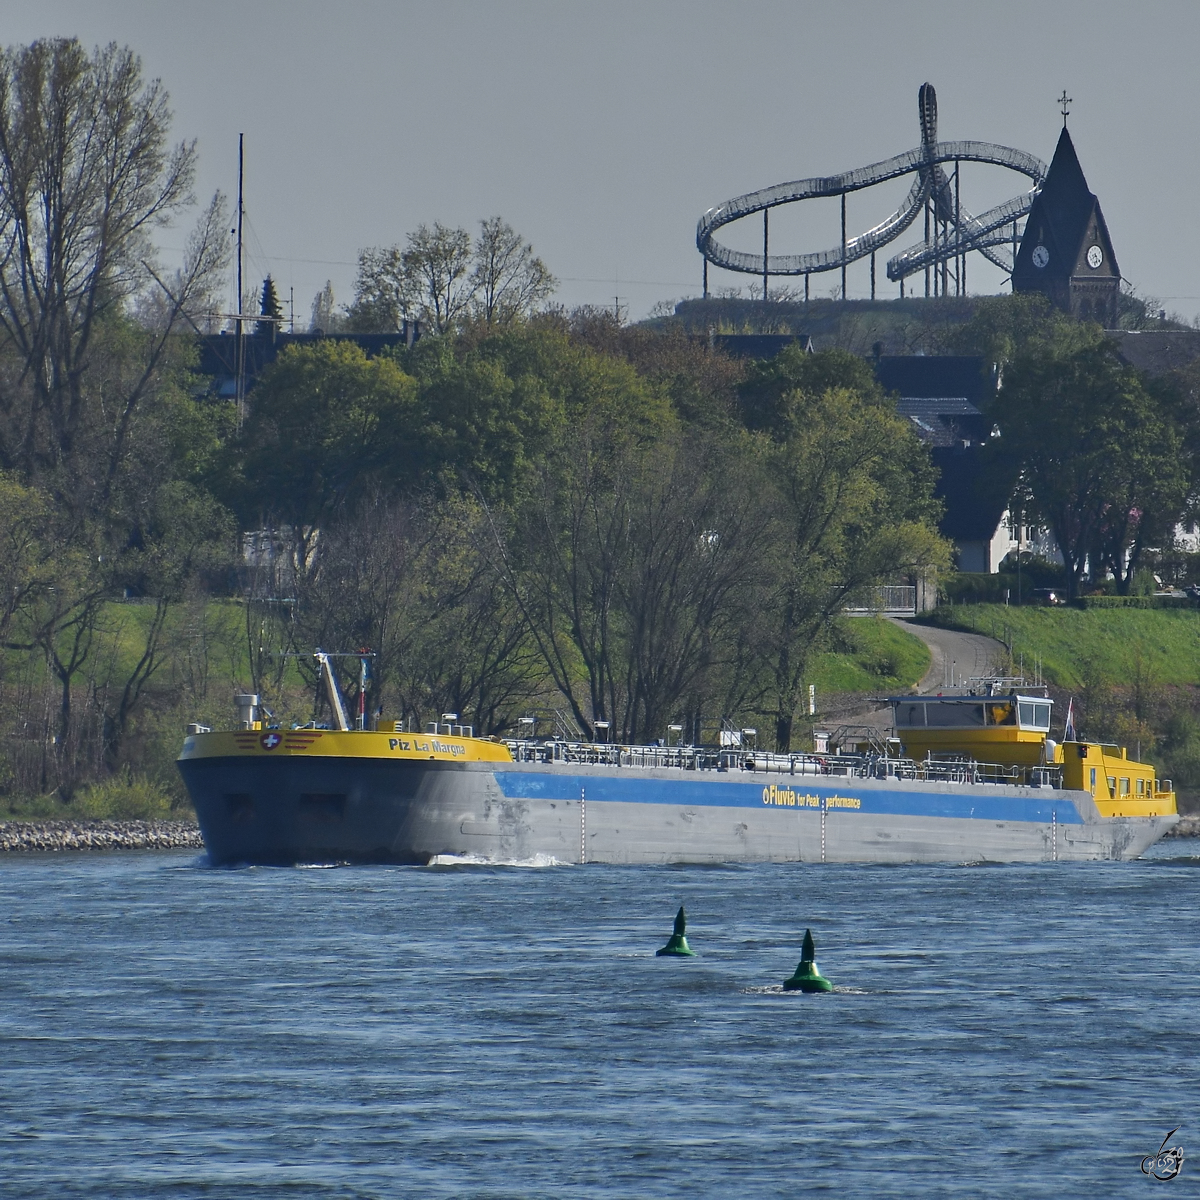 Das Tankmotorschiff PIZ LA MARGNA (ENI: 02338476)  war Mitte April 2021 auf dem Rhein bei Duisburg unterwegs.